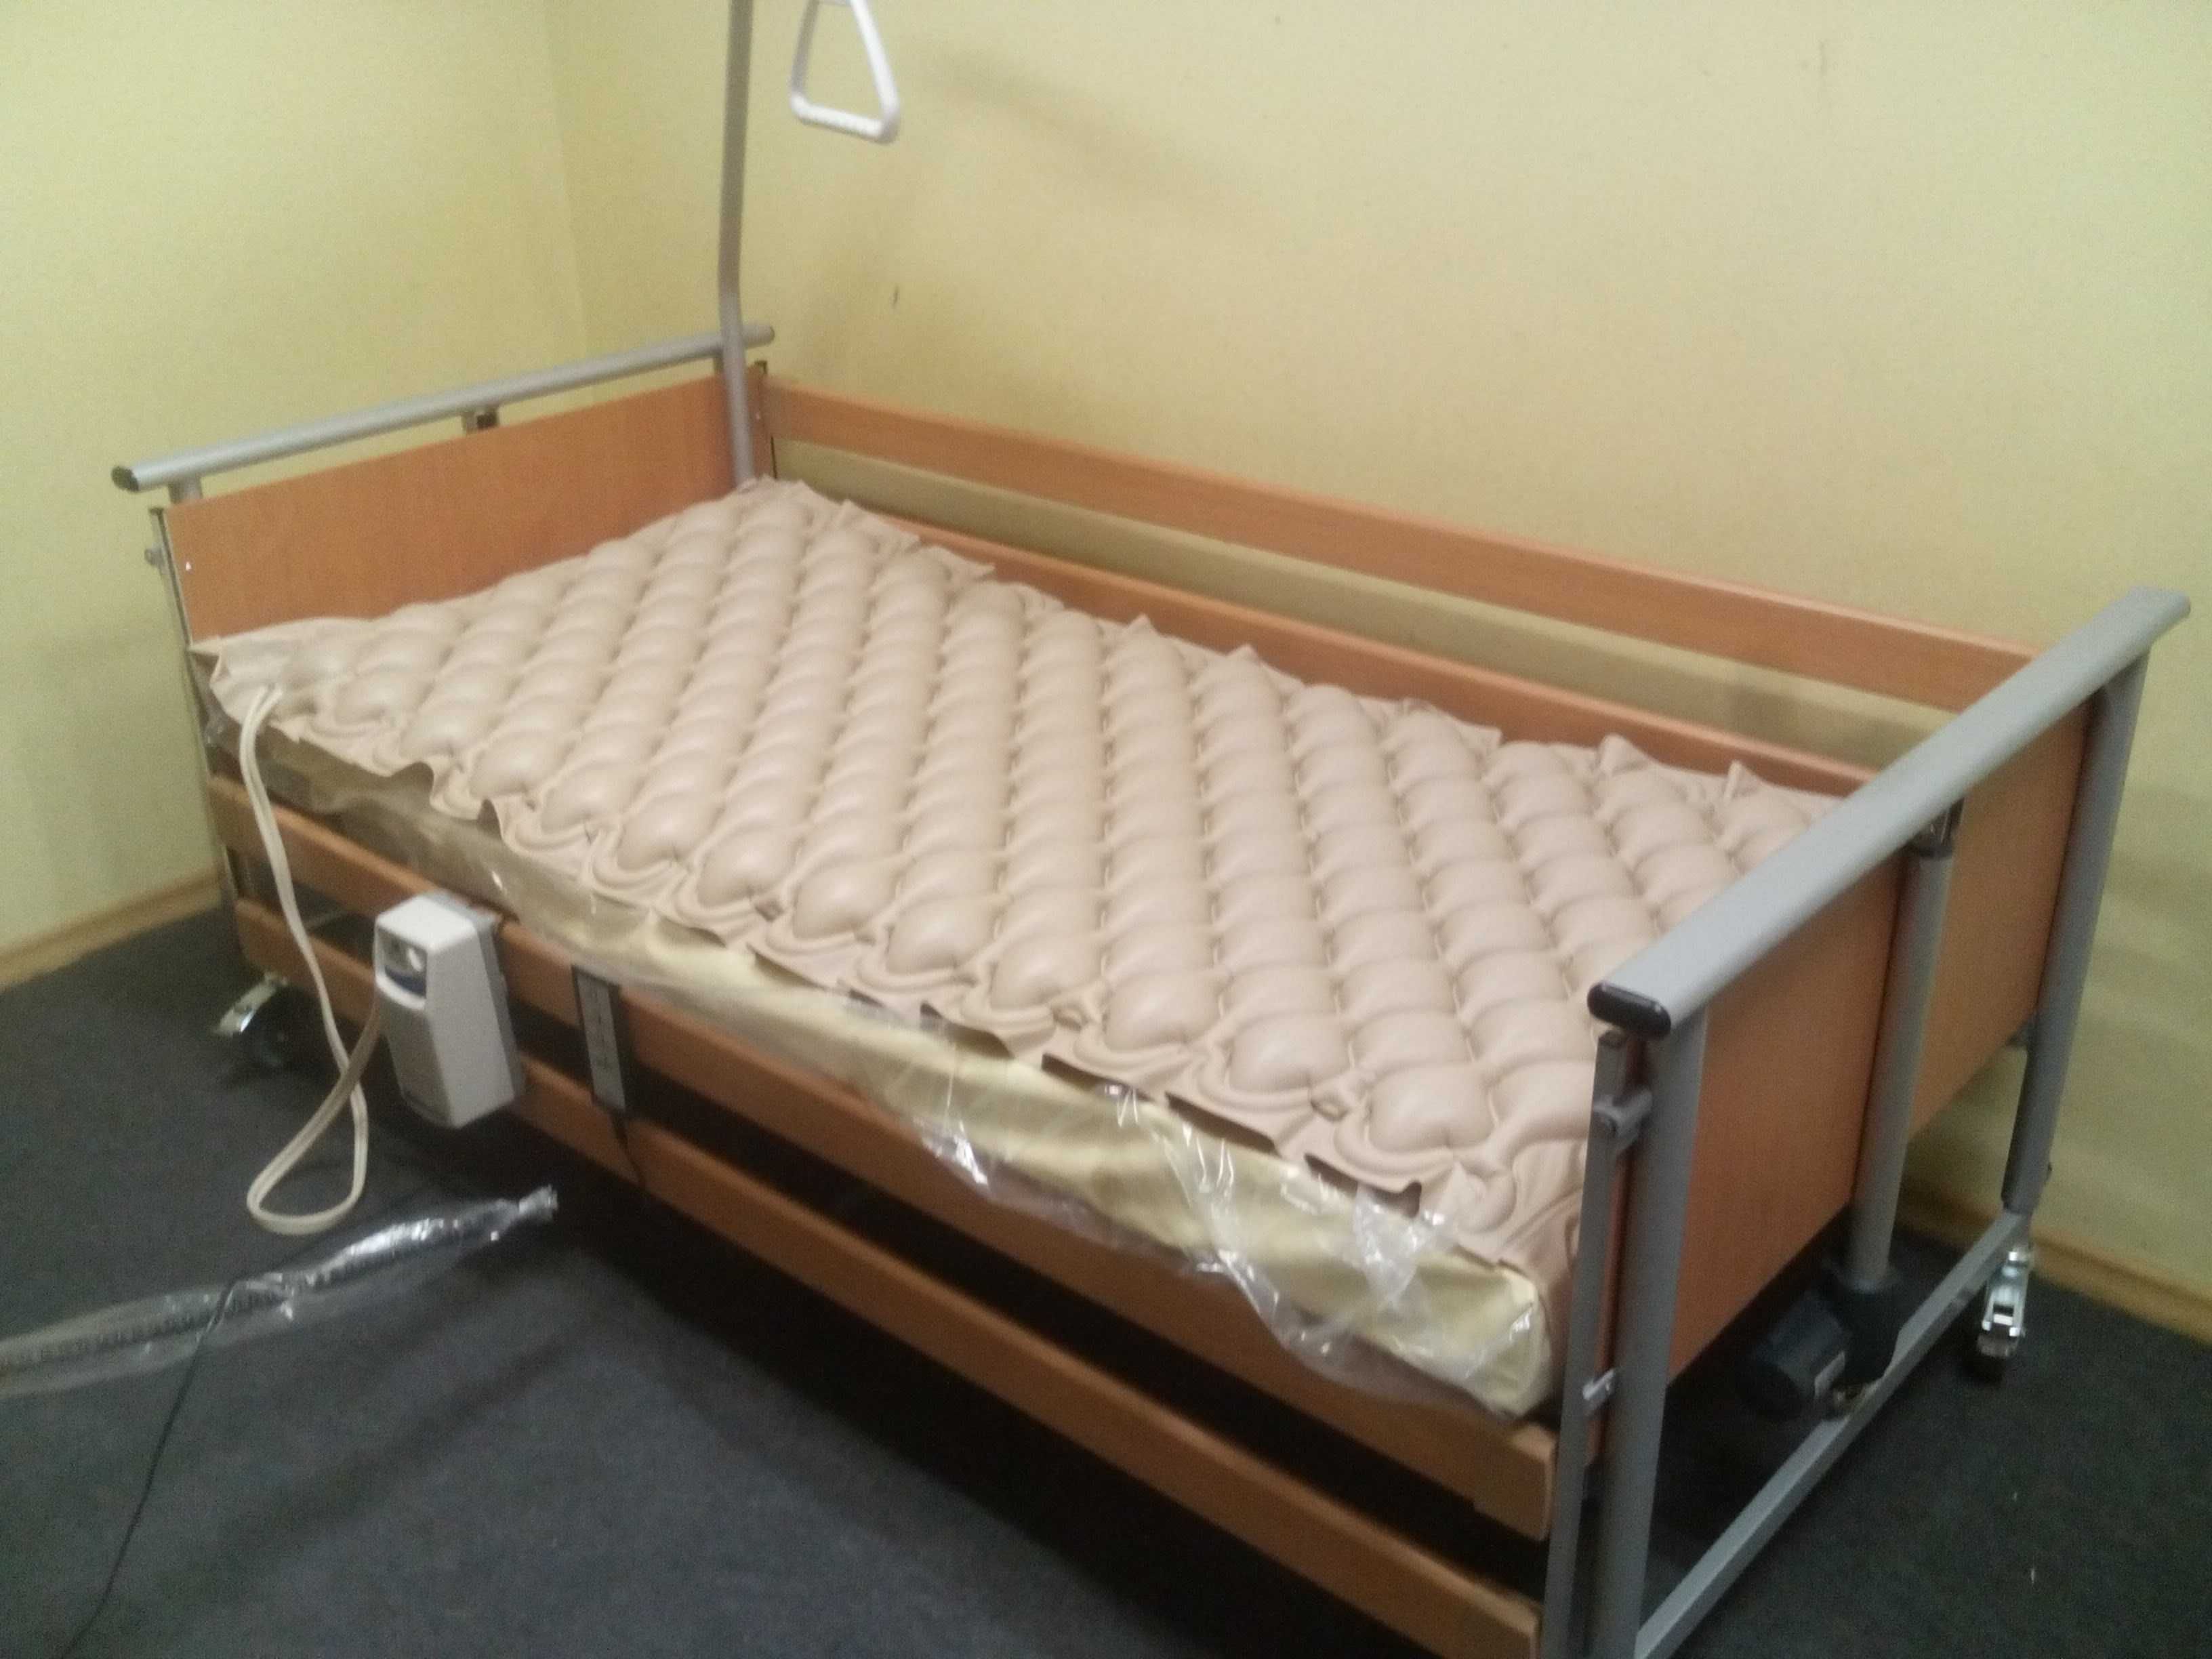 Nowe łóżko rehabilitacyjne Elbur 325 dostawa oraz montaż sprzętu!